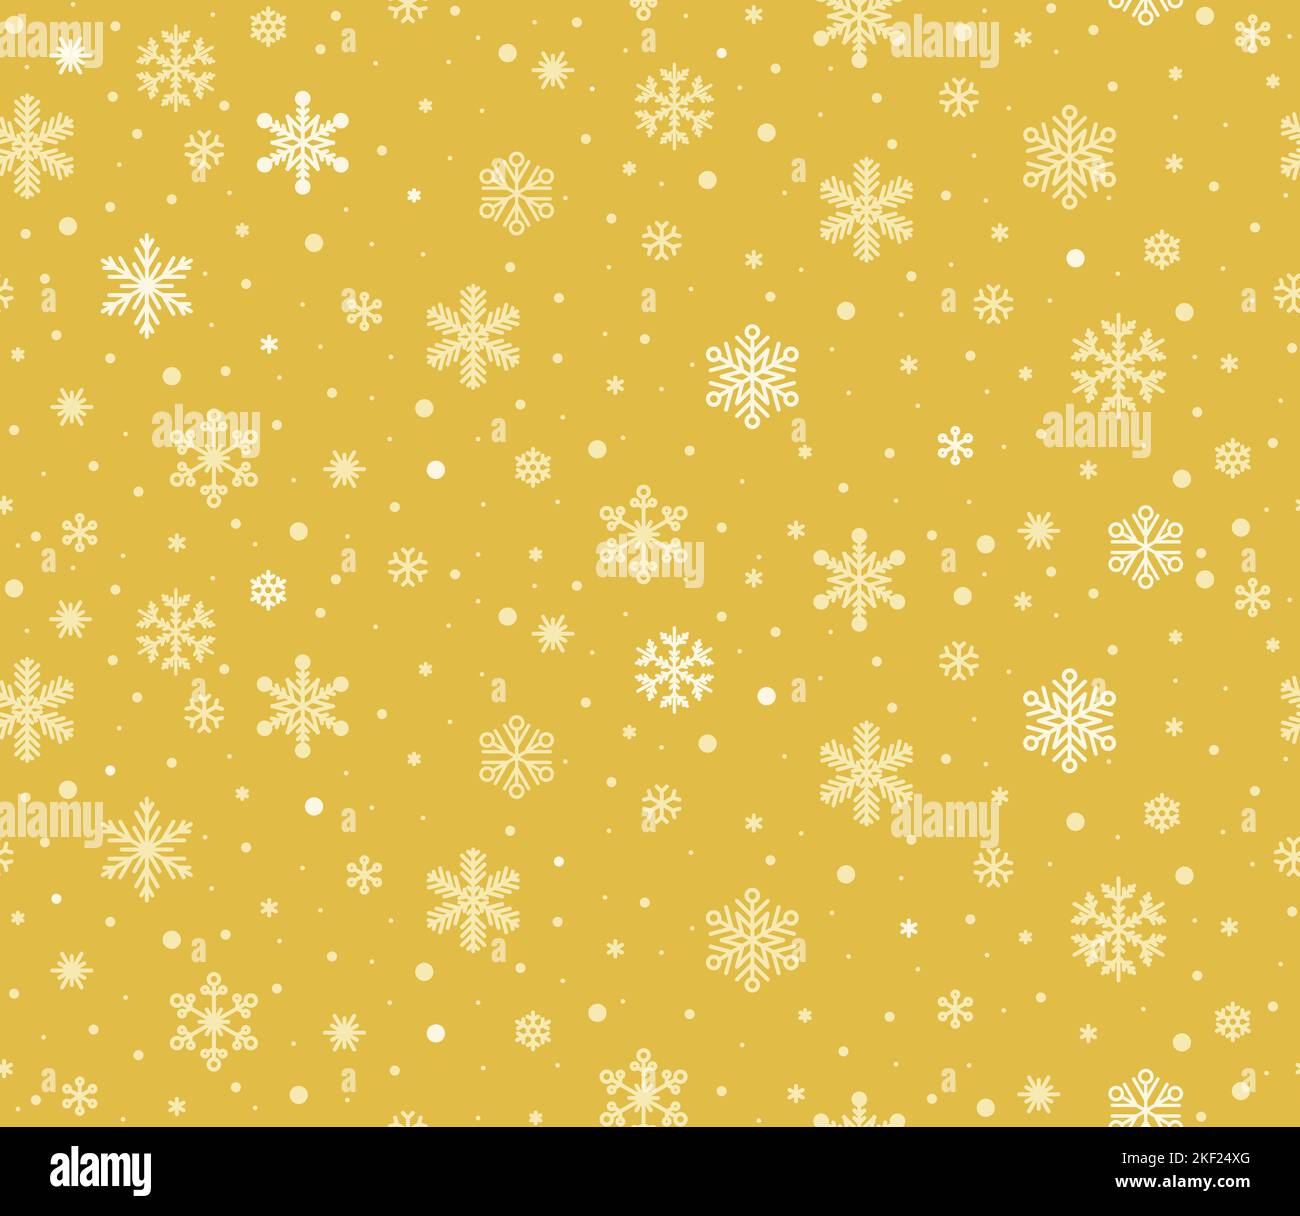 Nahtlose Schneeflocken Hintergrund. Vektor Gold Schneeflocken Weihnachten Textur. Schneeflocken im dänischen nordischen Stil. Stock Vektor